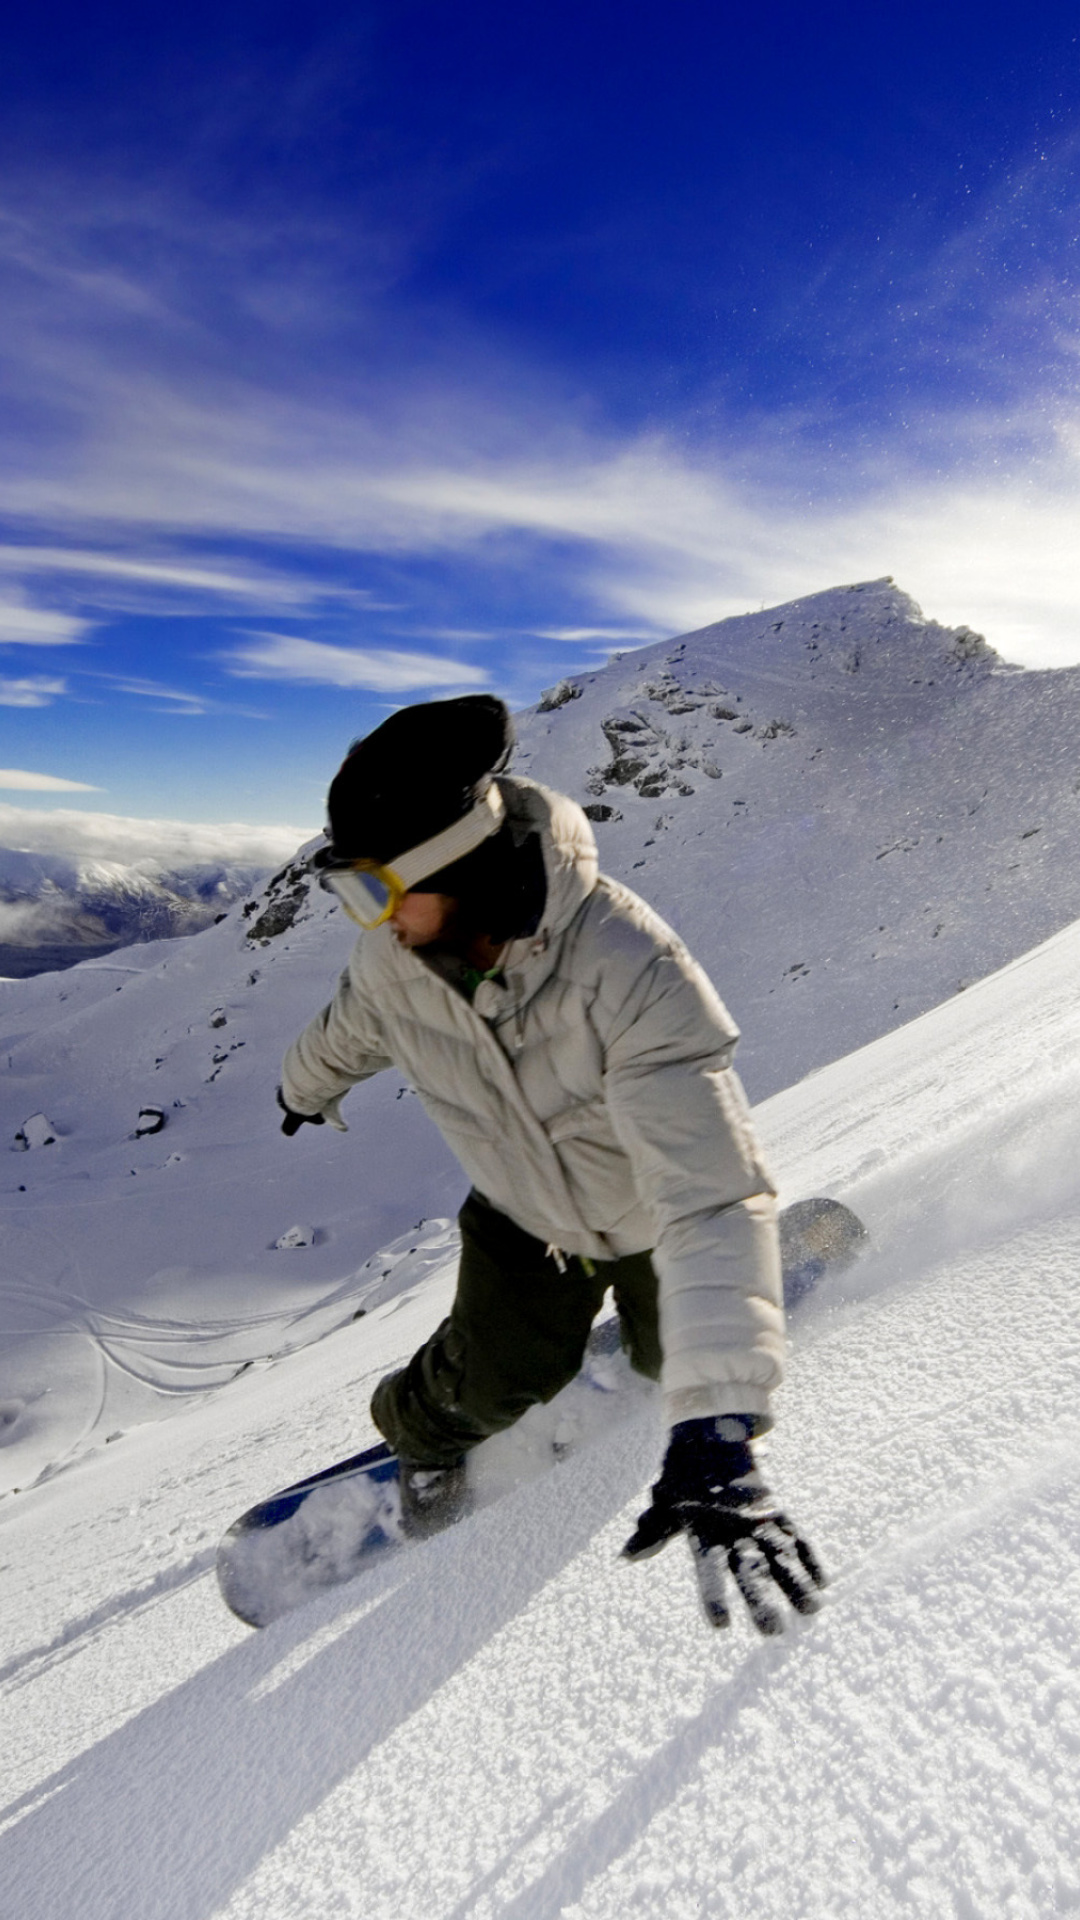 Outdoor activities as Snowboarding wallpaper 1080x1920